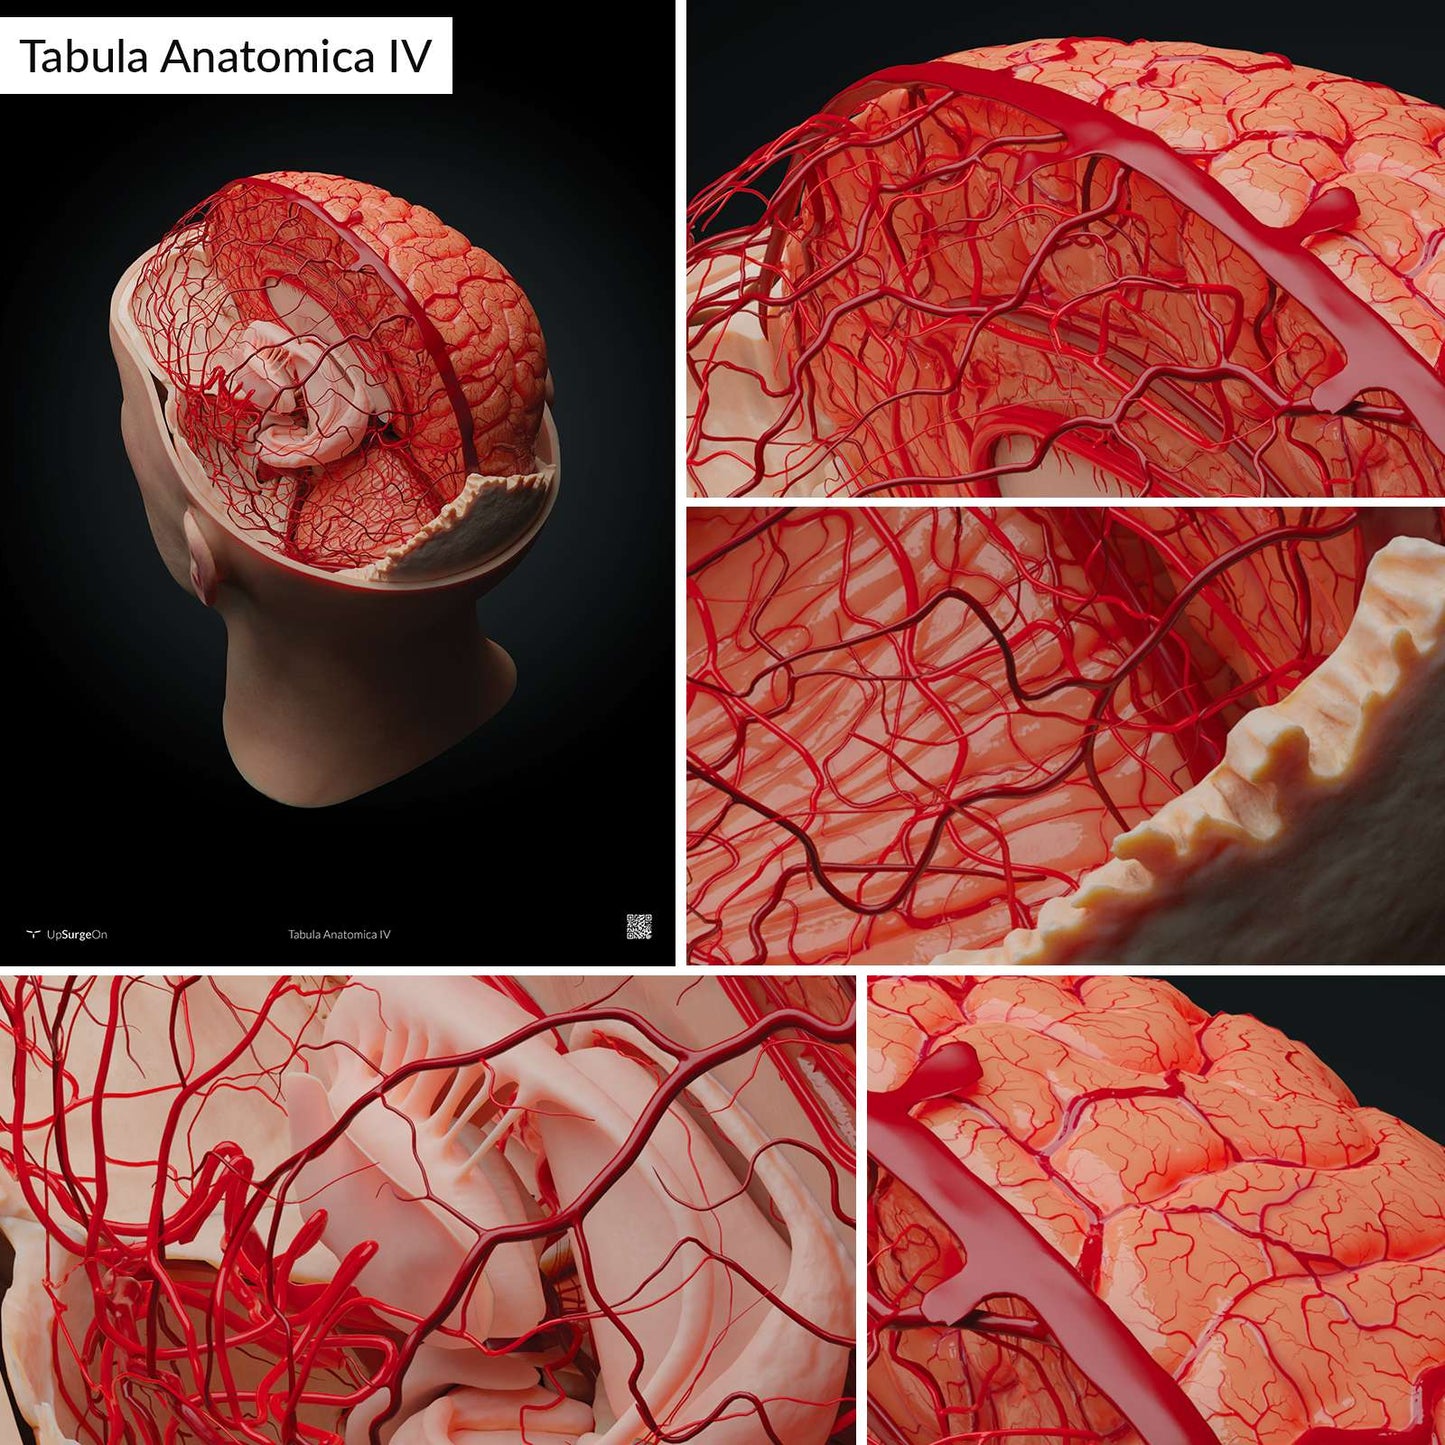 AnatomyARt Tabula Anatomica IV